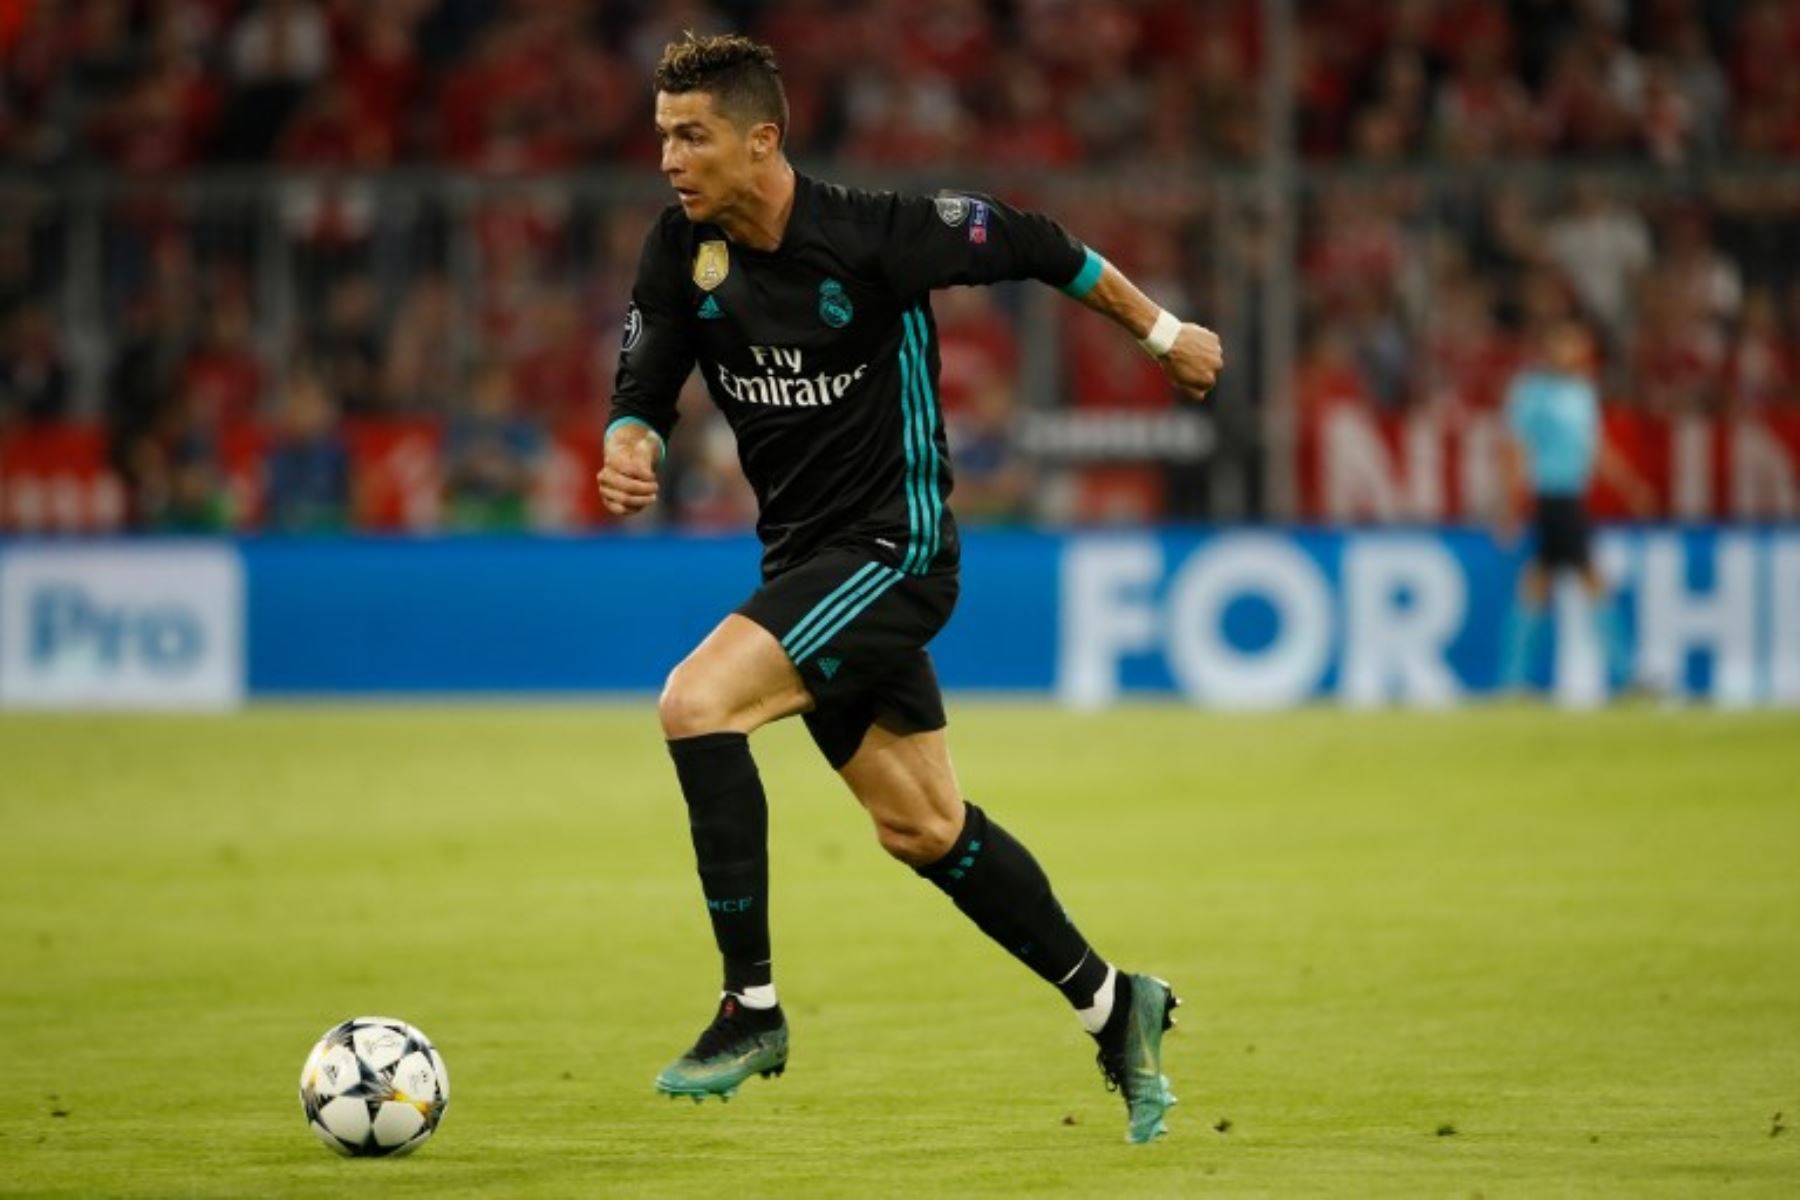 Cristiano Ronaldo, corre con la pelota durante el partido de ida de la semifinal de la UEFA Champions League FC Bayern Munich - Real Madrid CF en Múnich.Foto:AFP